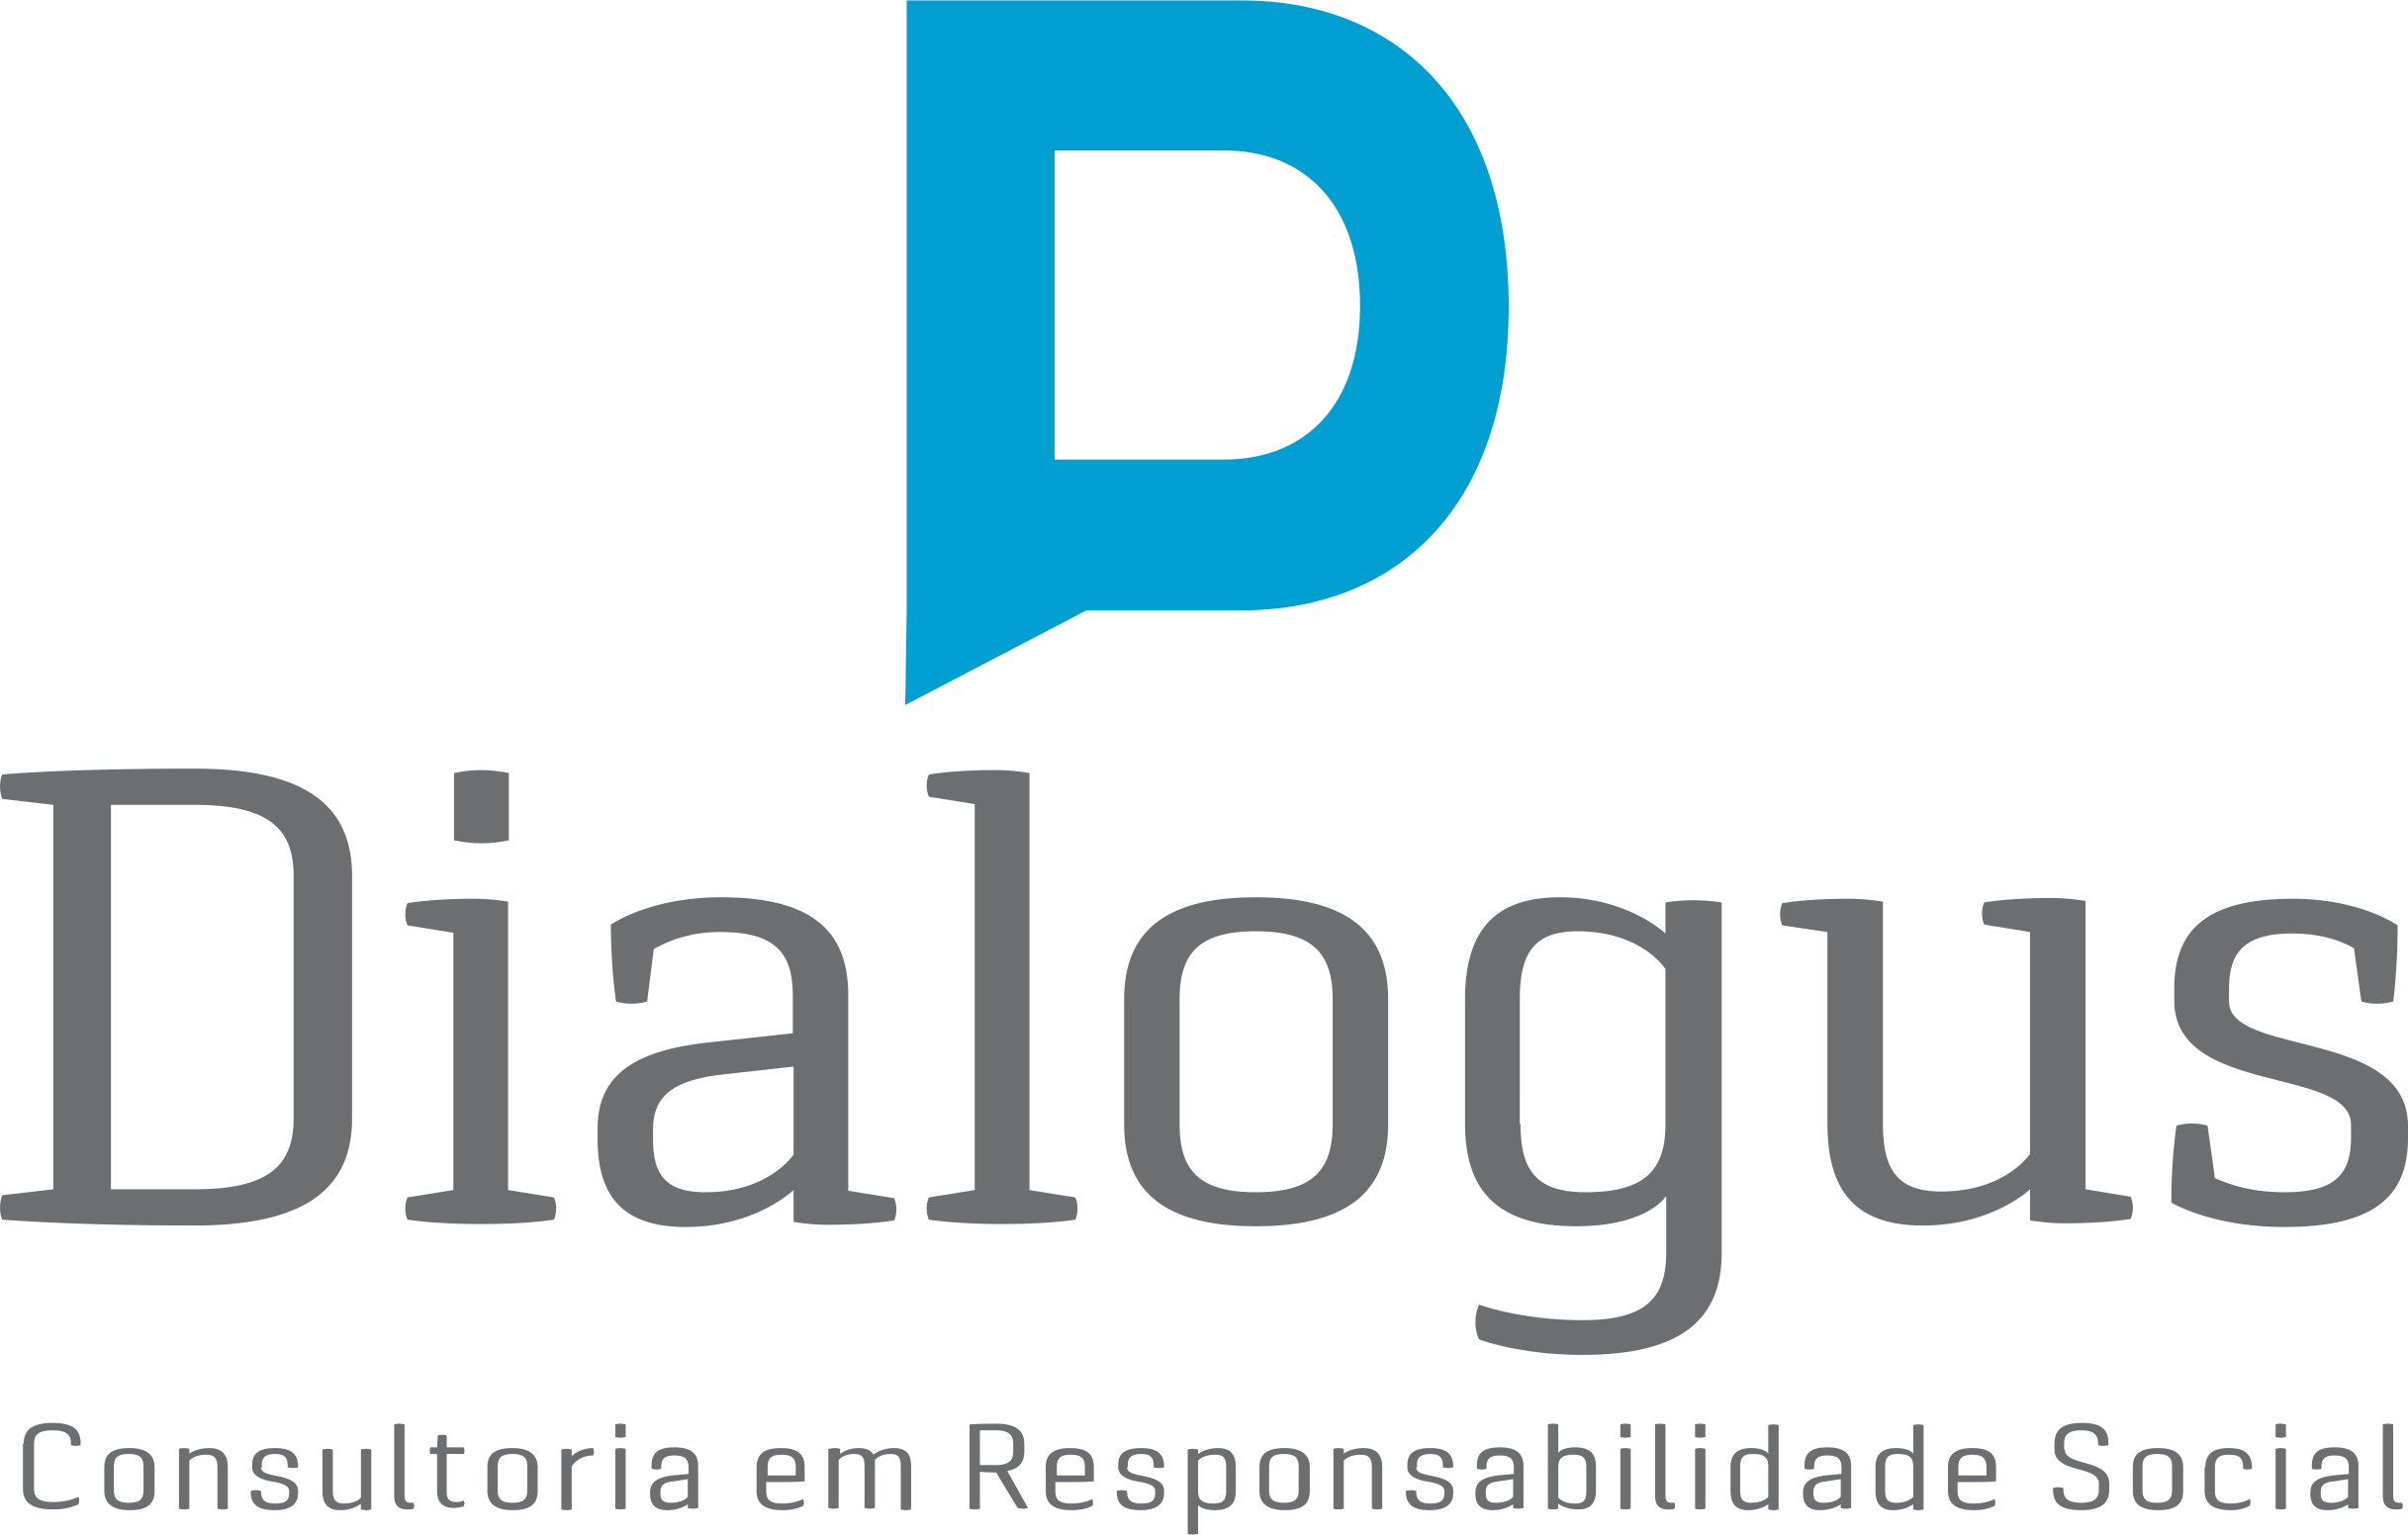 Dialogus Responsabilidade Social - Consultoria - Gestão Organizacional do Terceiro Setor - Fortaleza/CE